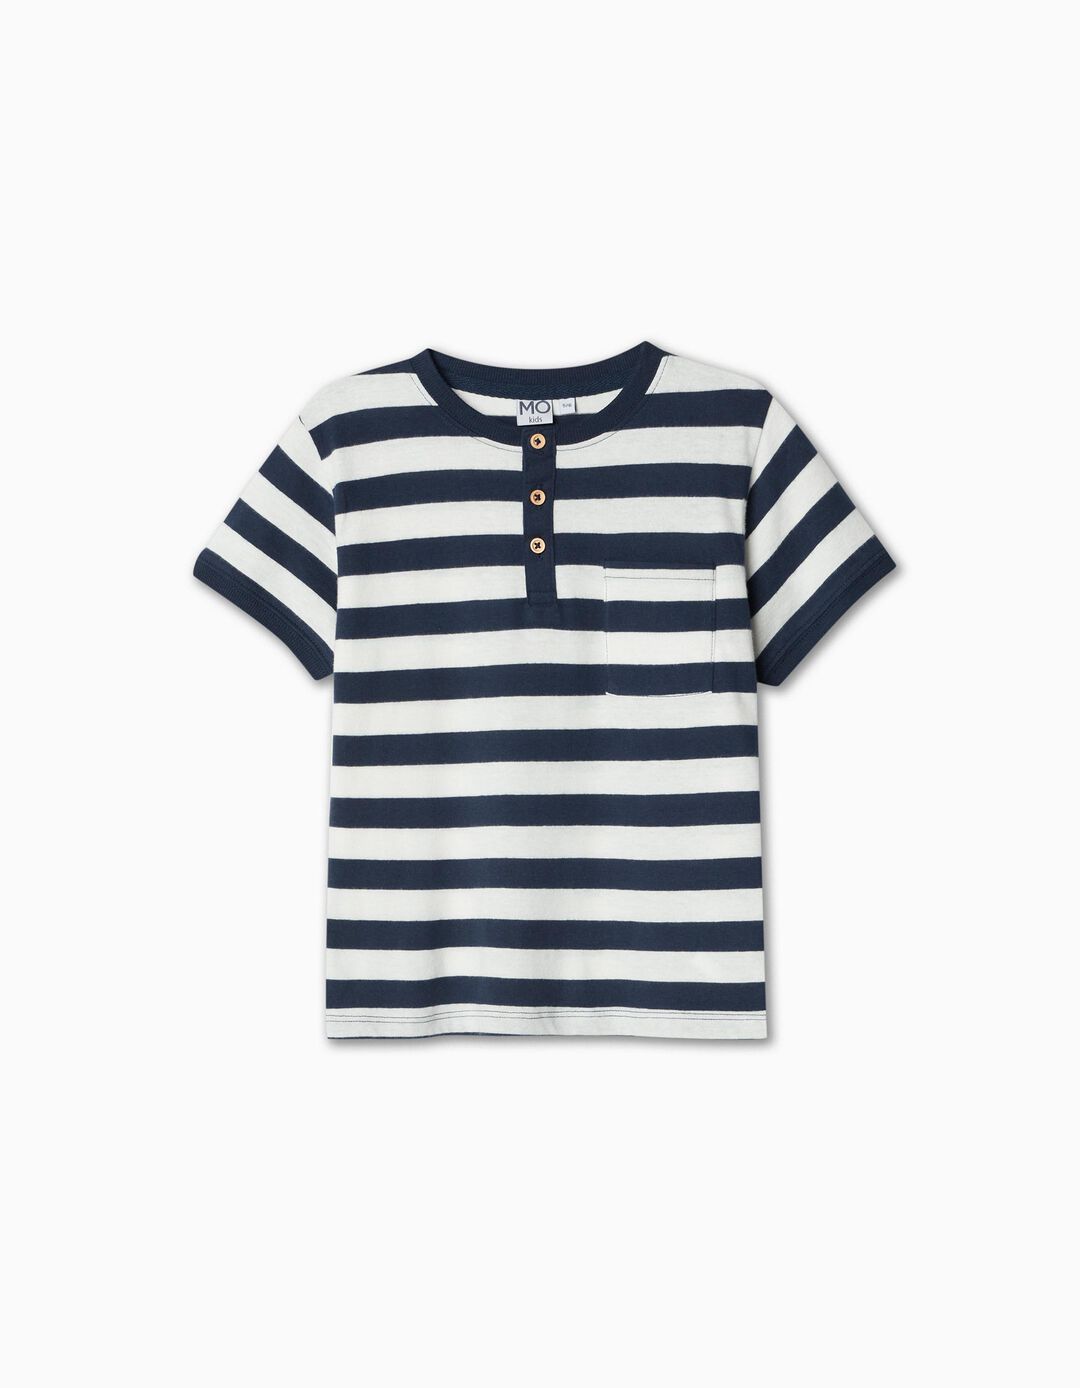 Buttons Striped T-shirt, Boy, Dark Blue